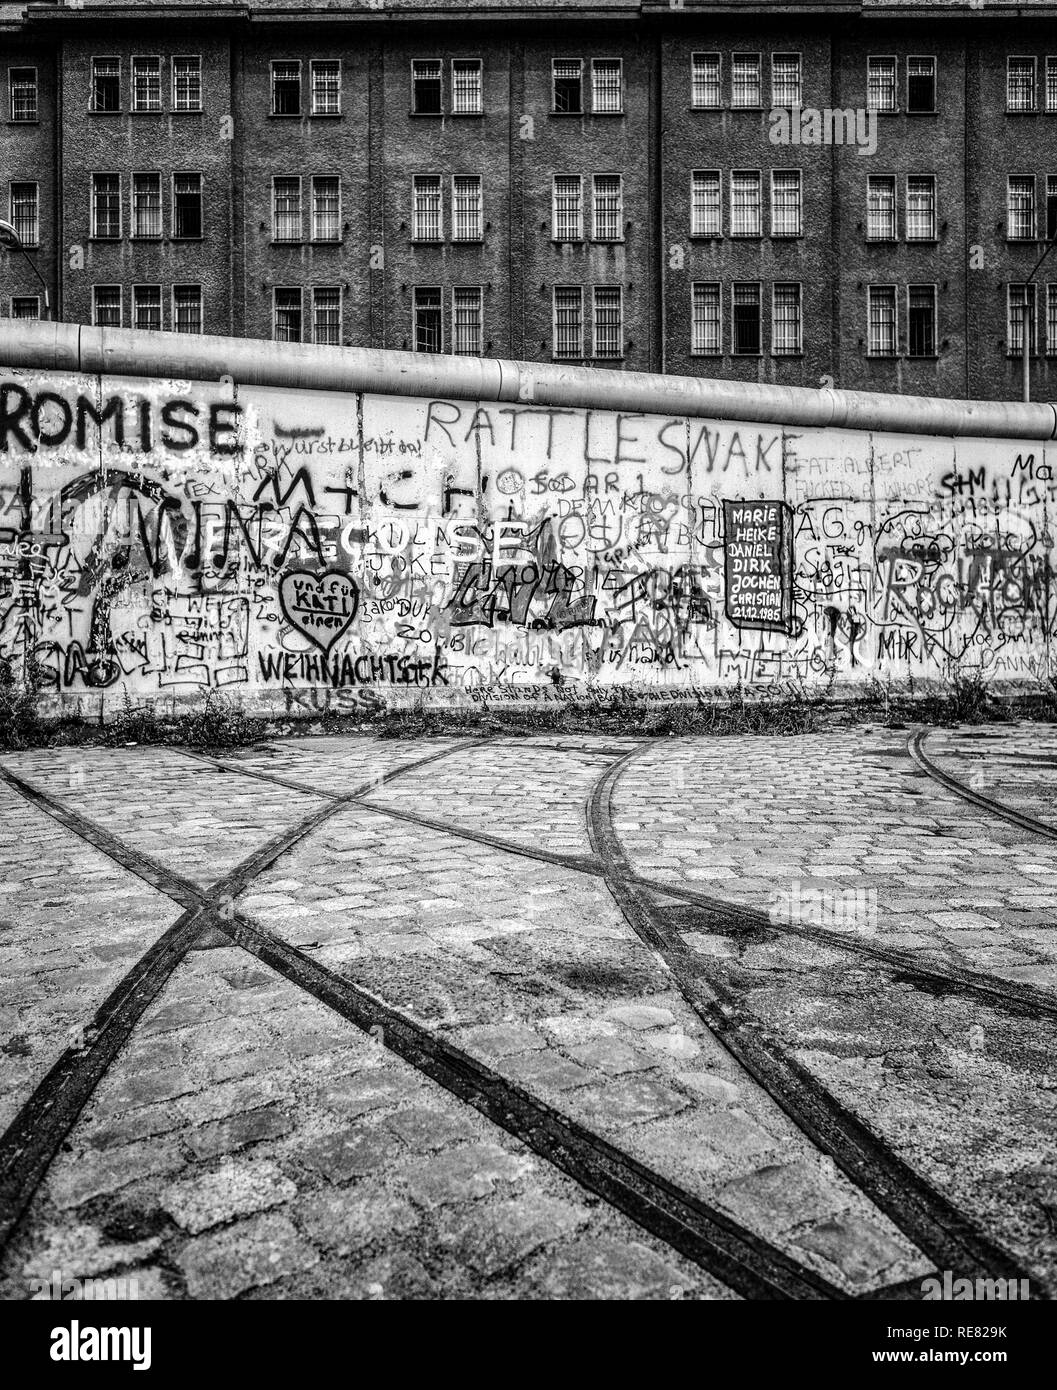 Août 1986, les graffitis du mur de Berlin, la voie de tramway se terminant dans le mur, Berlin est, Berlin Ouest, l'Allemagne, l'Europe, Banque D'Images